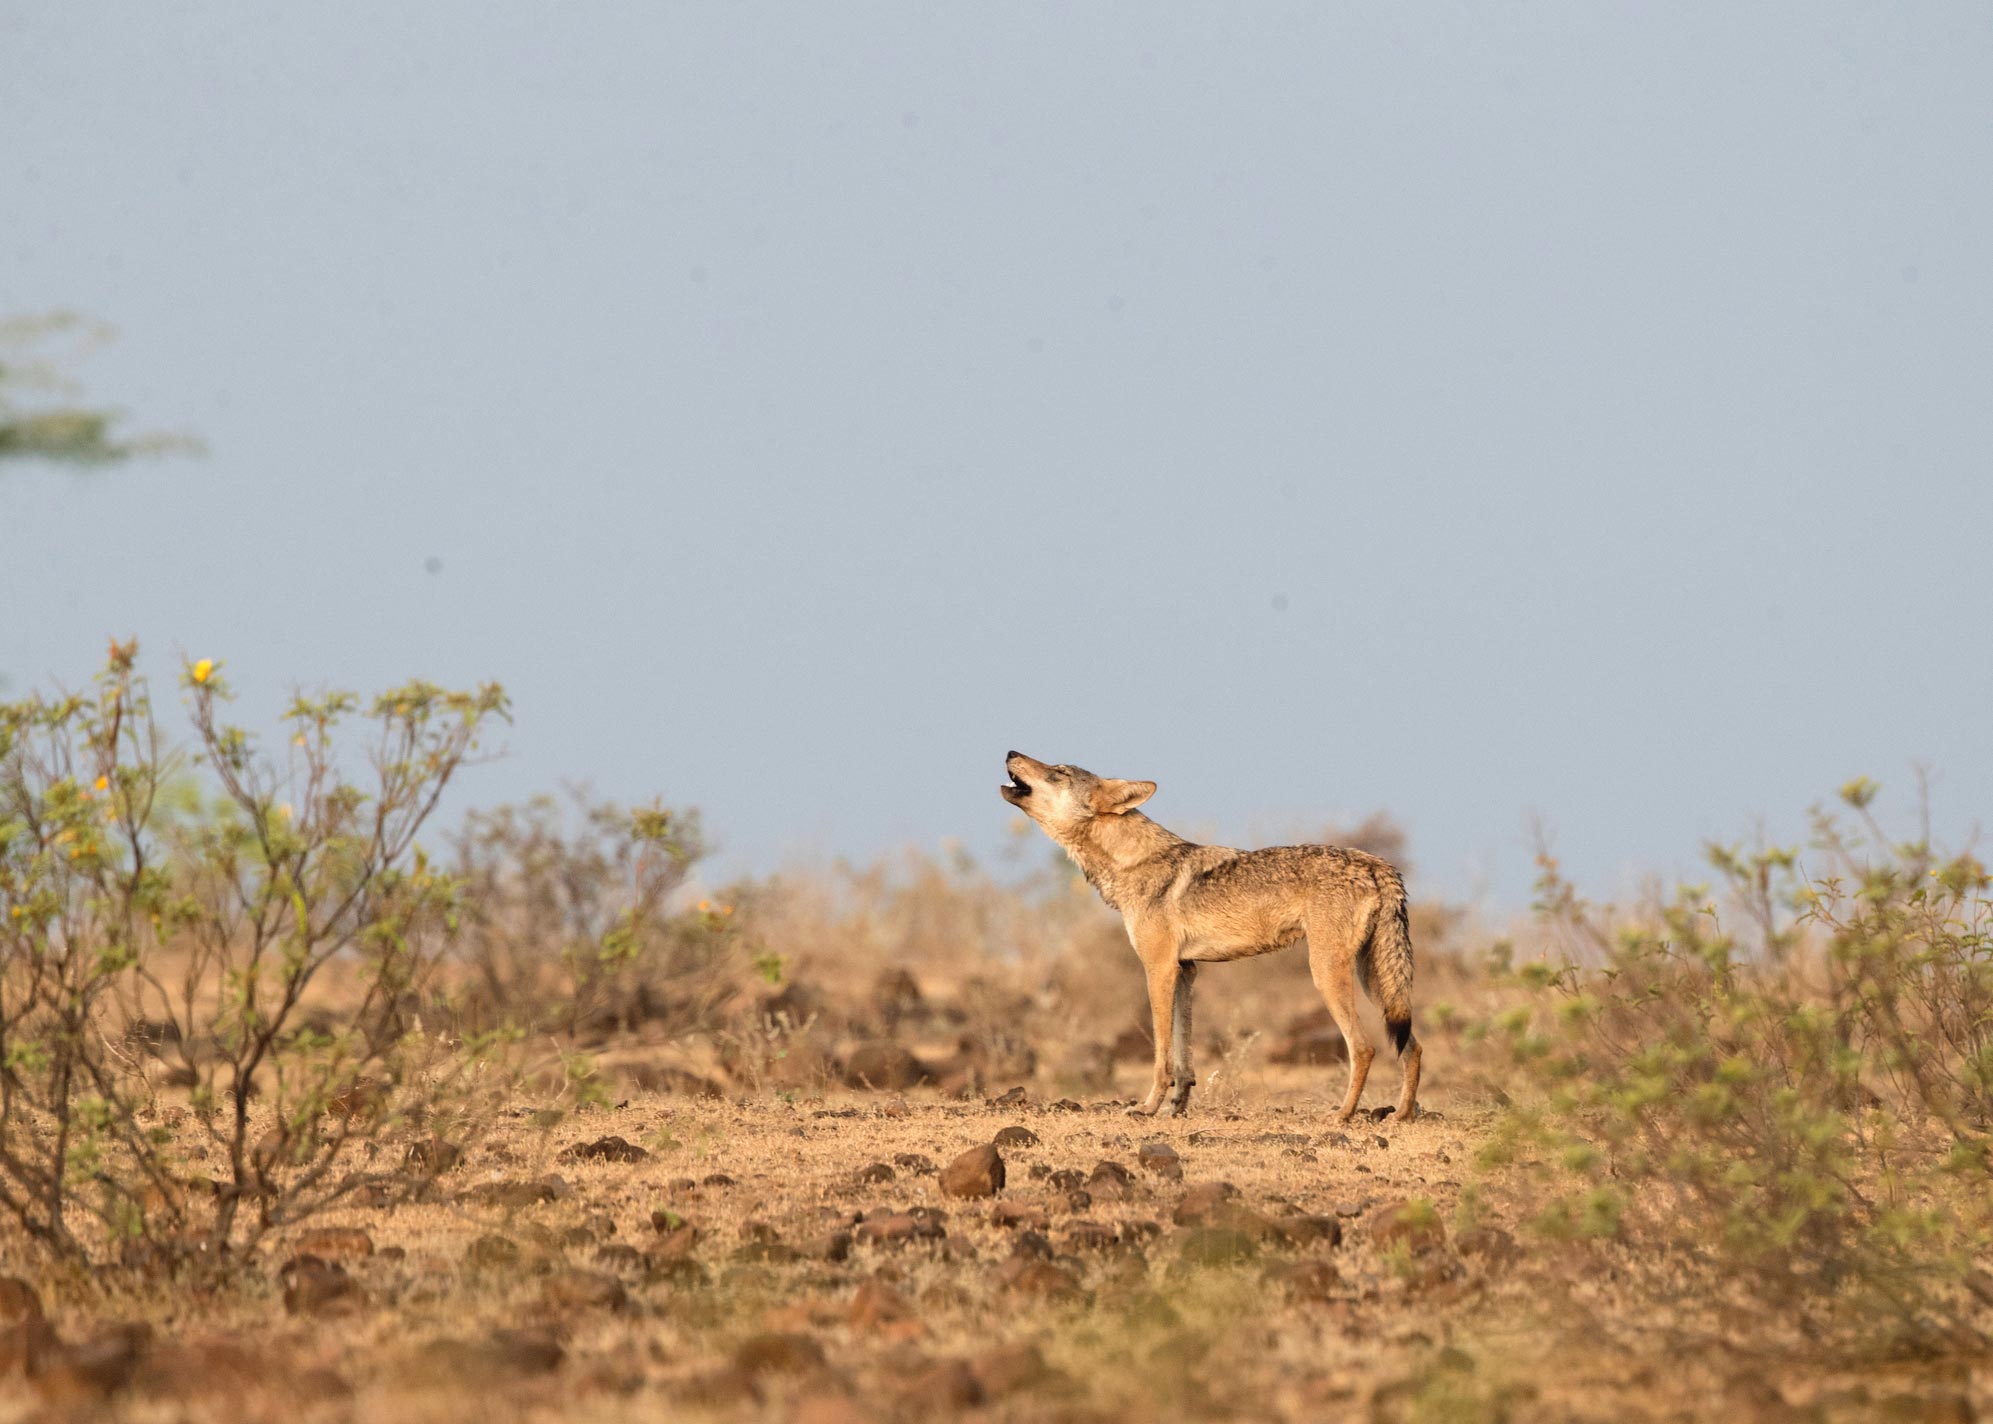 《Molecular Ecology》：印度狼是世界上最濒危的灰狼种群 比之前认为的更加濒危